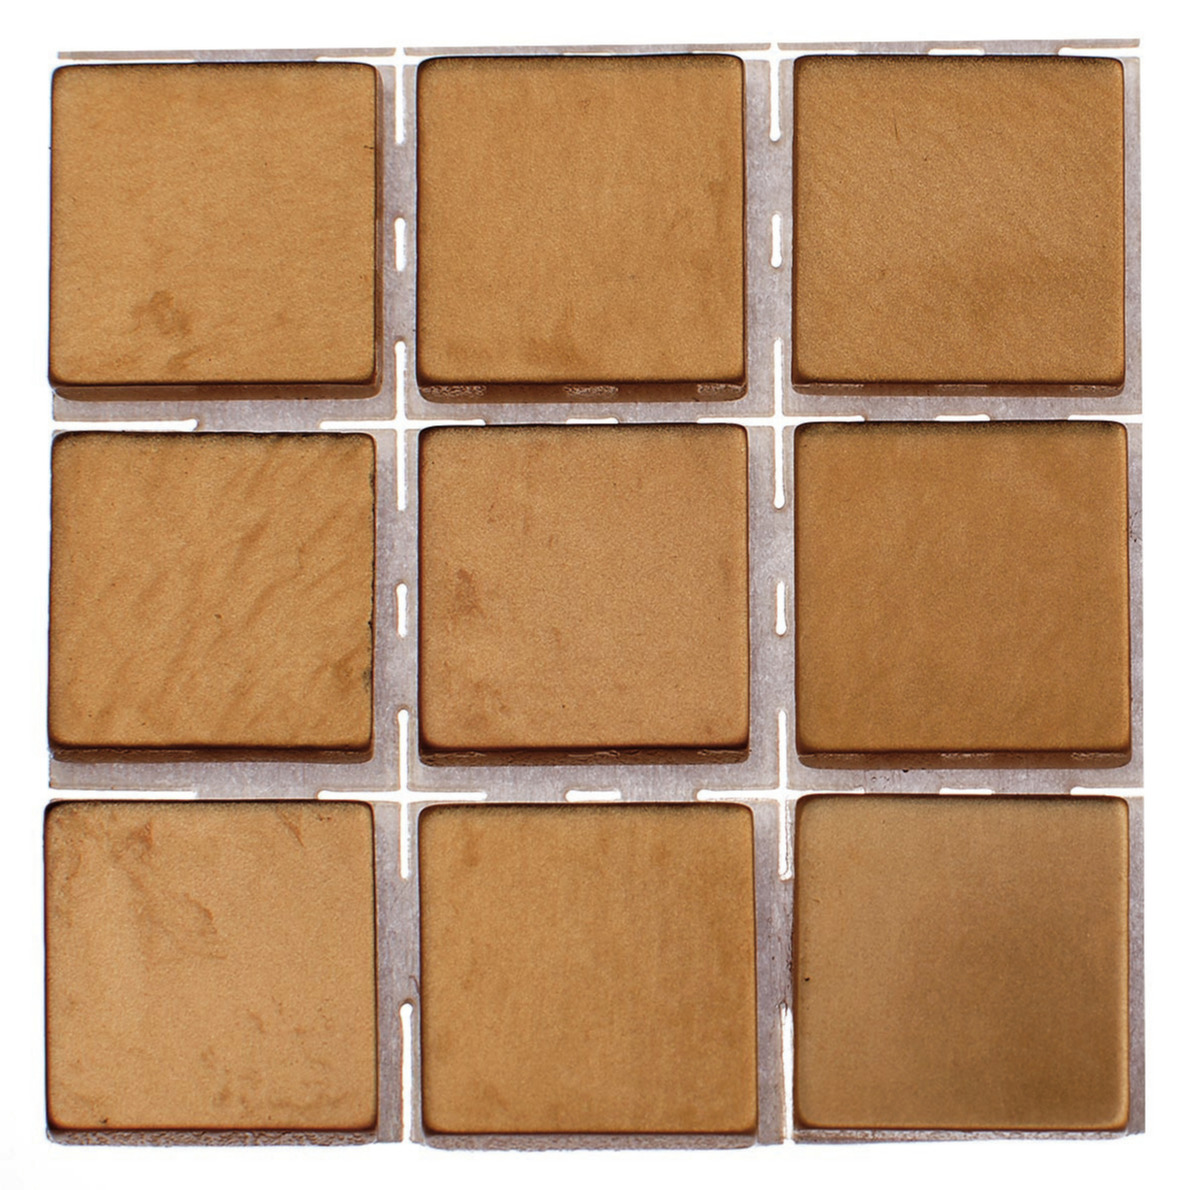 504x stuks mozaieken maken steentjes/tegels kleur brons 10 x 10 x 2 mm -